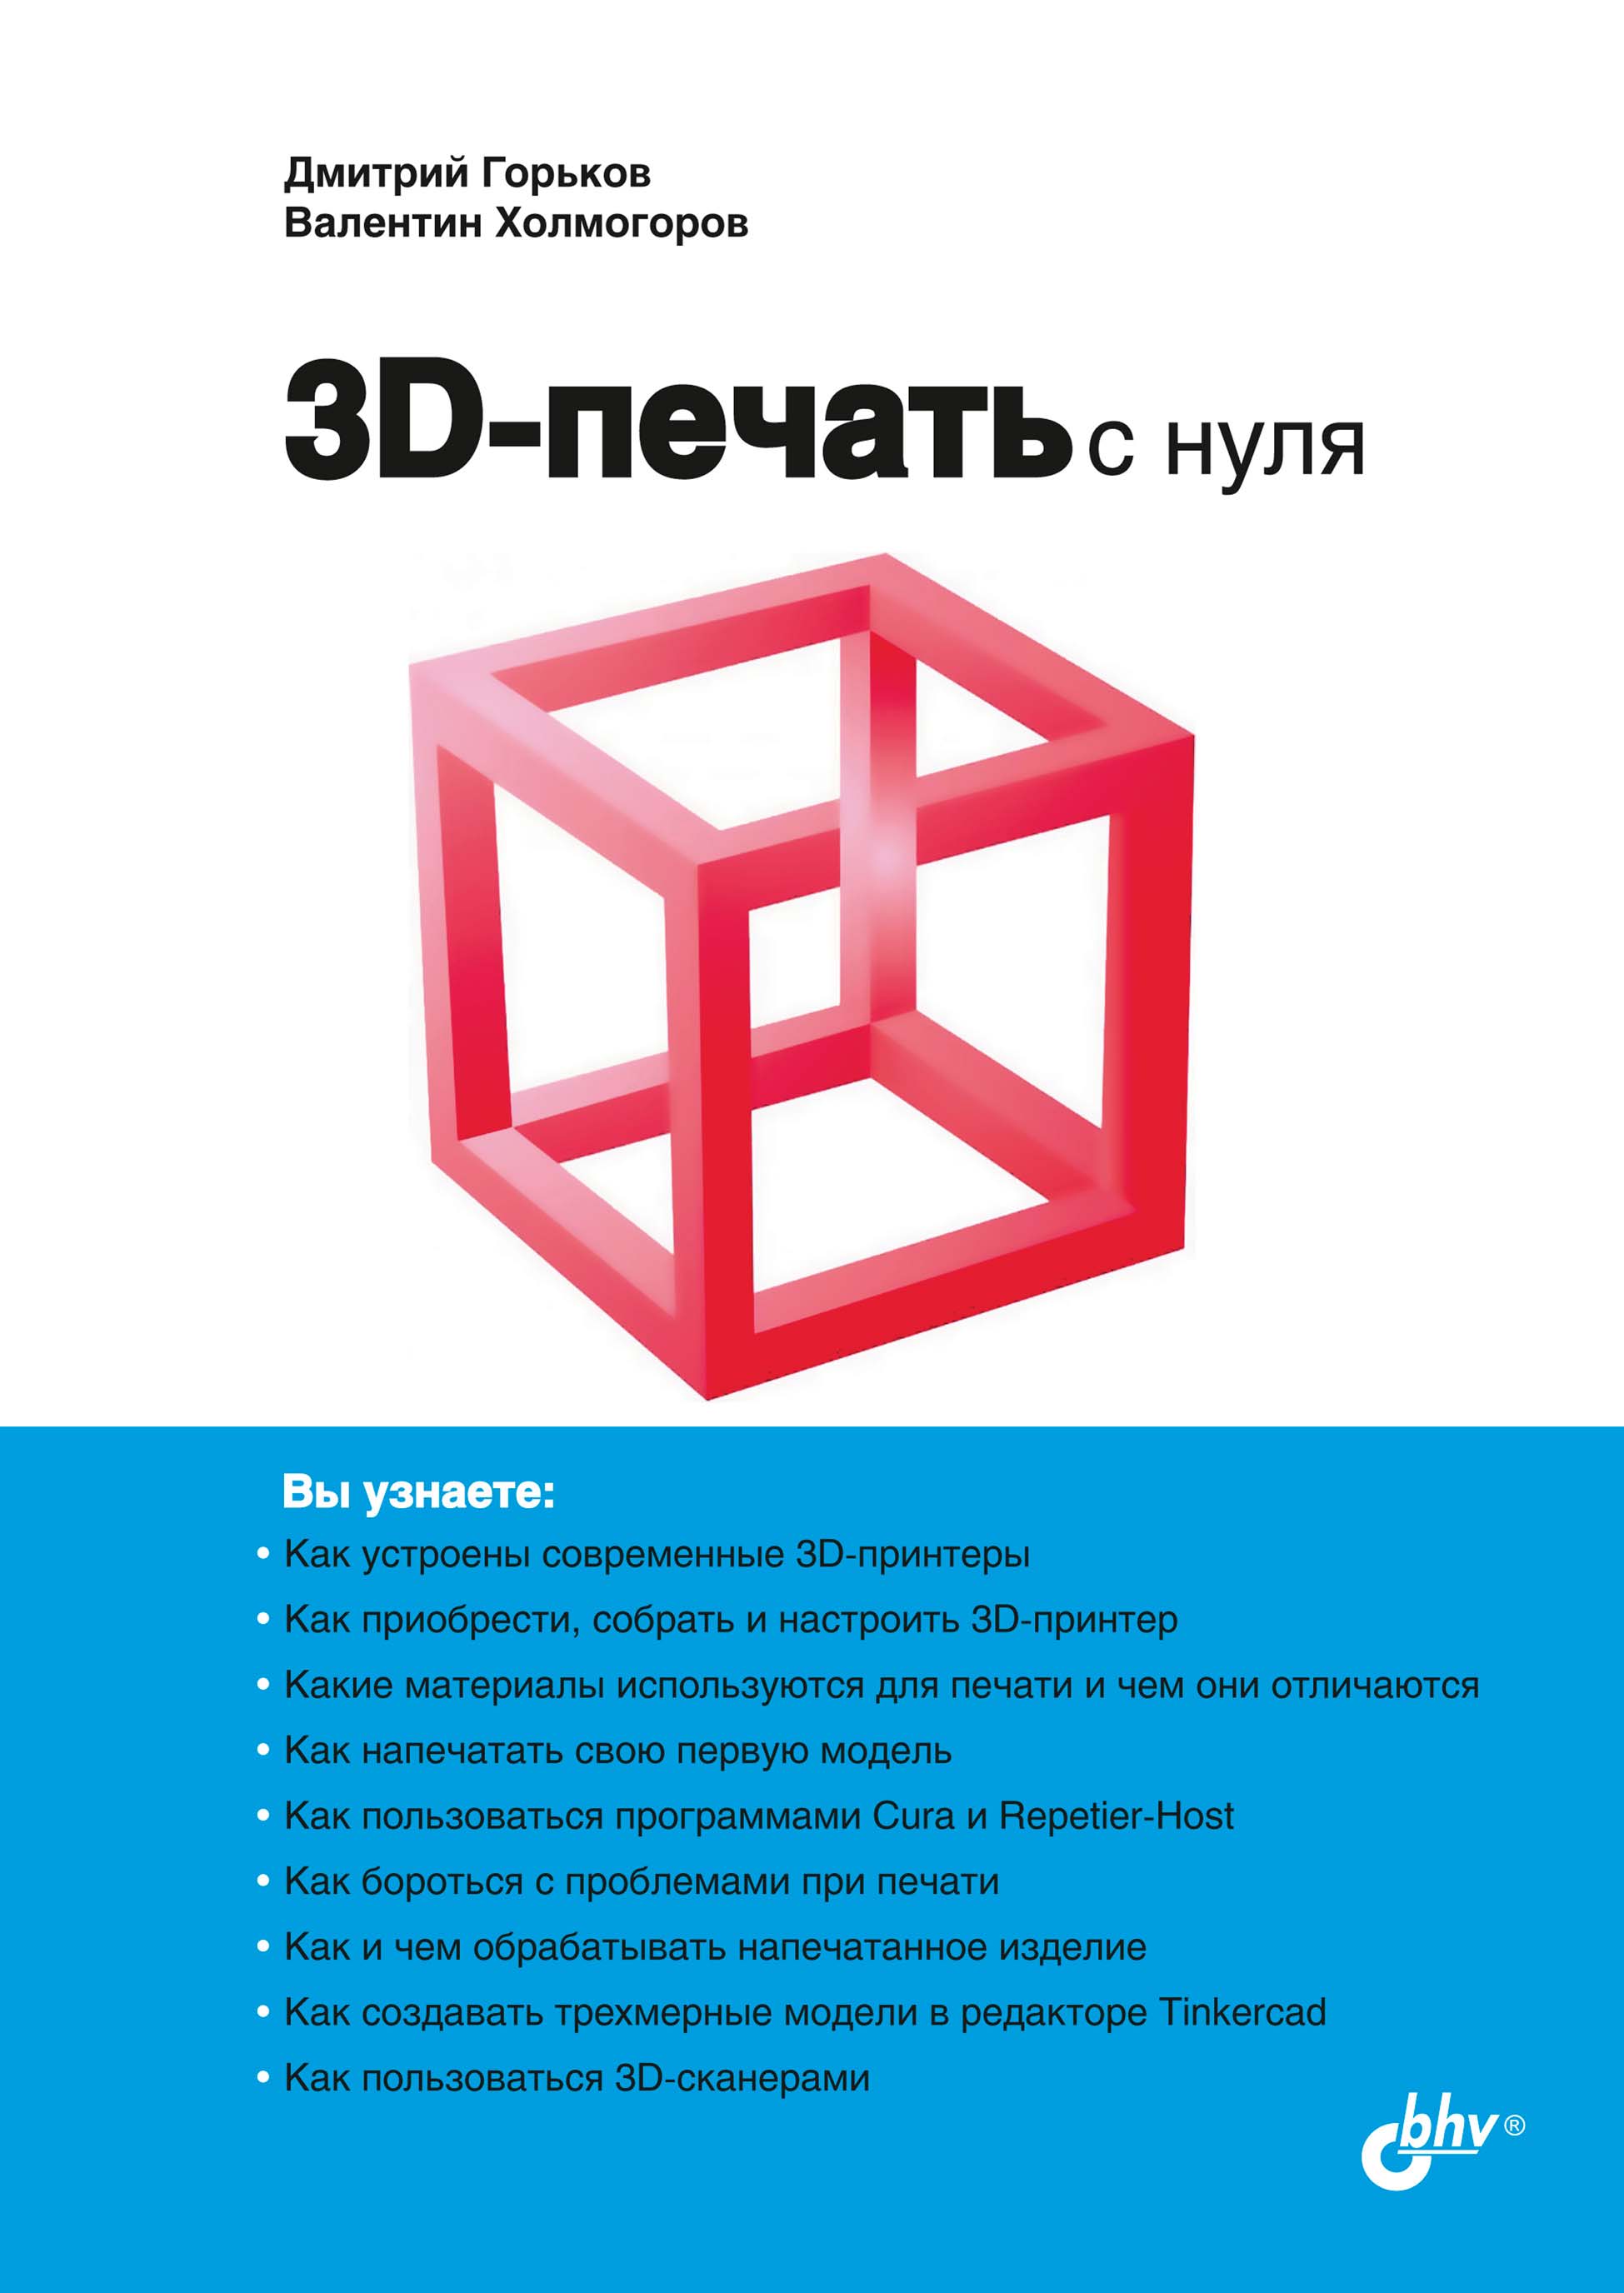 Как открыть бизнес на 3D-печати: полное руководство для начинающих